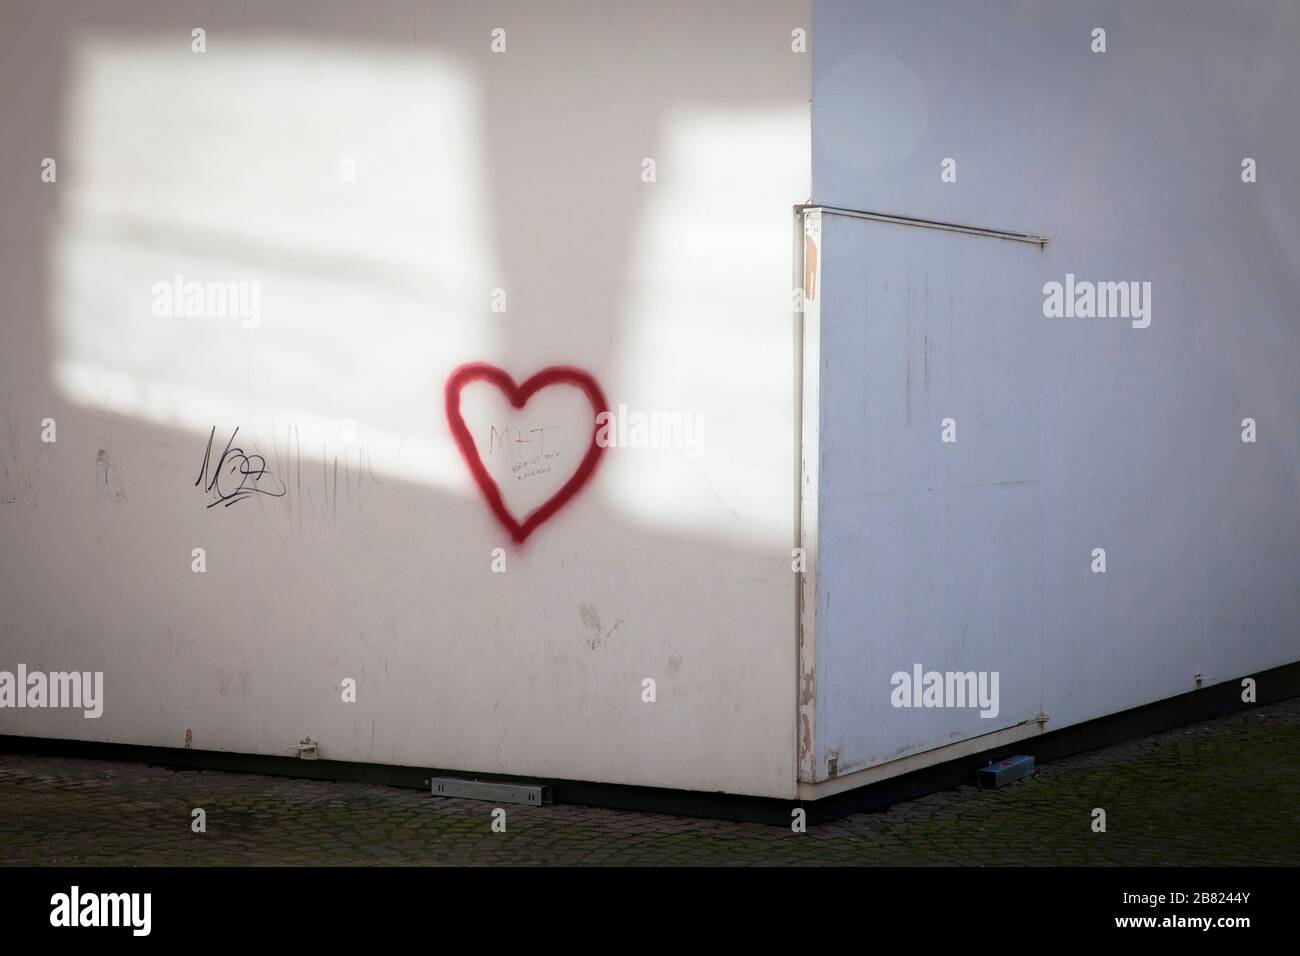 graffiti coeur sur le Cube de la Maison d'Architecture sur la place Josef-Haubrich-Hof, Cologne, Allemagne. Graffitiherz auf dem Kubus des Hauses der Banque D'Images